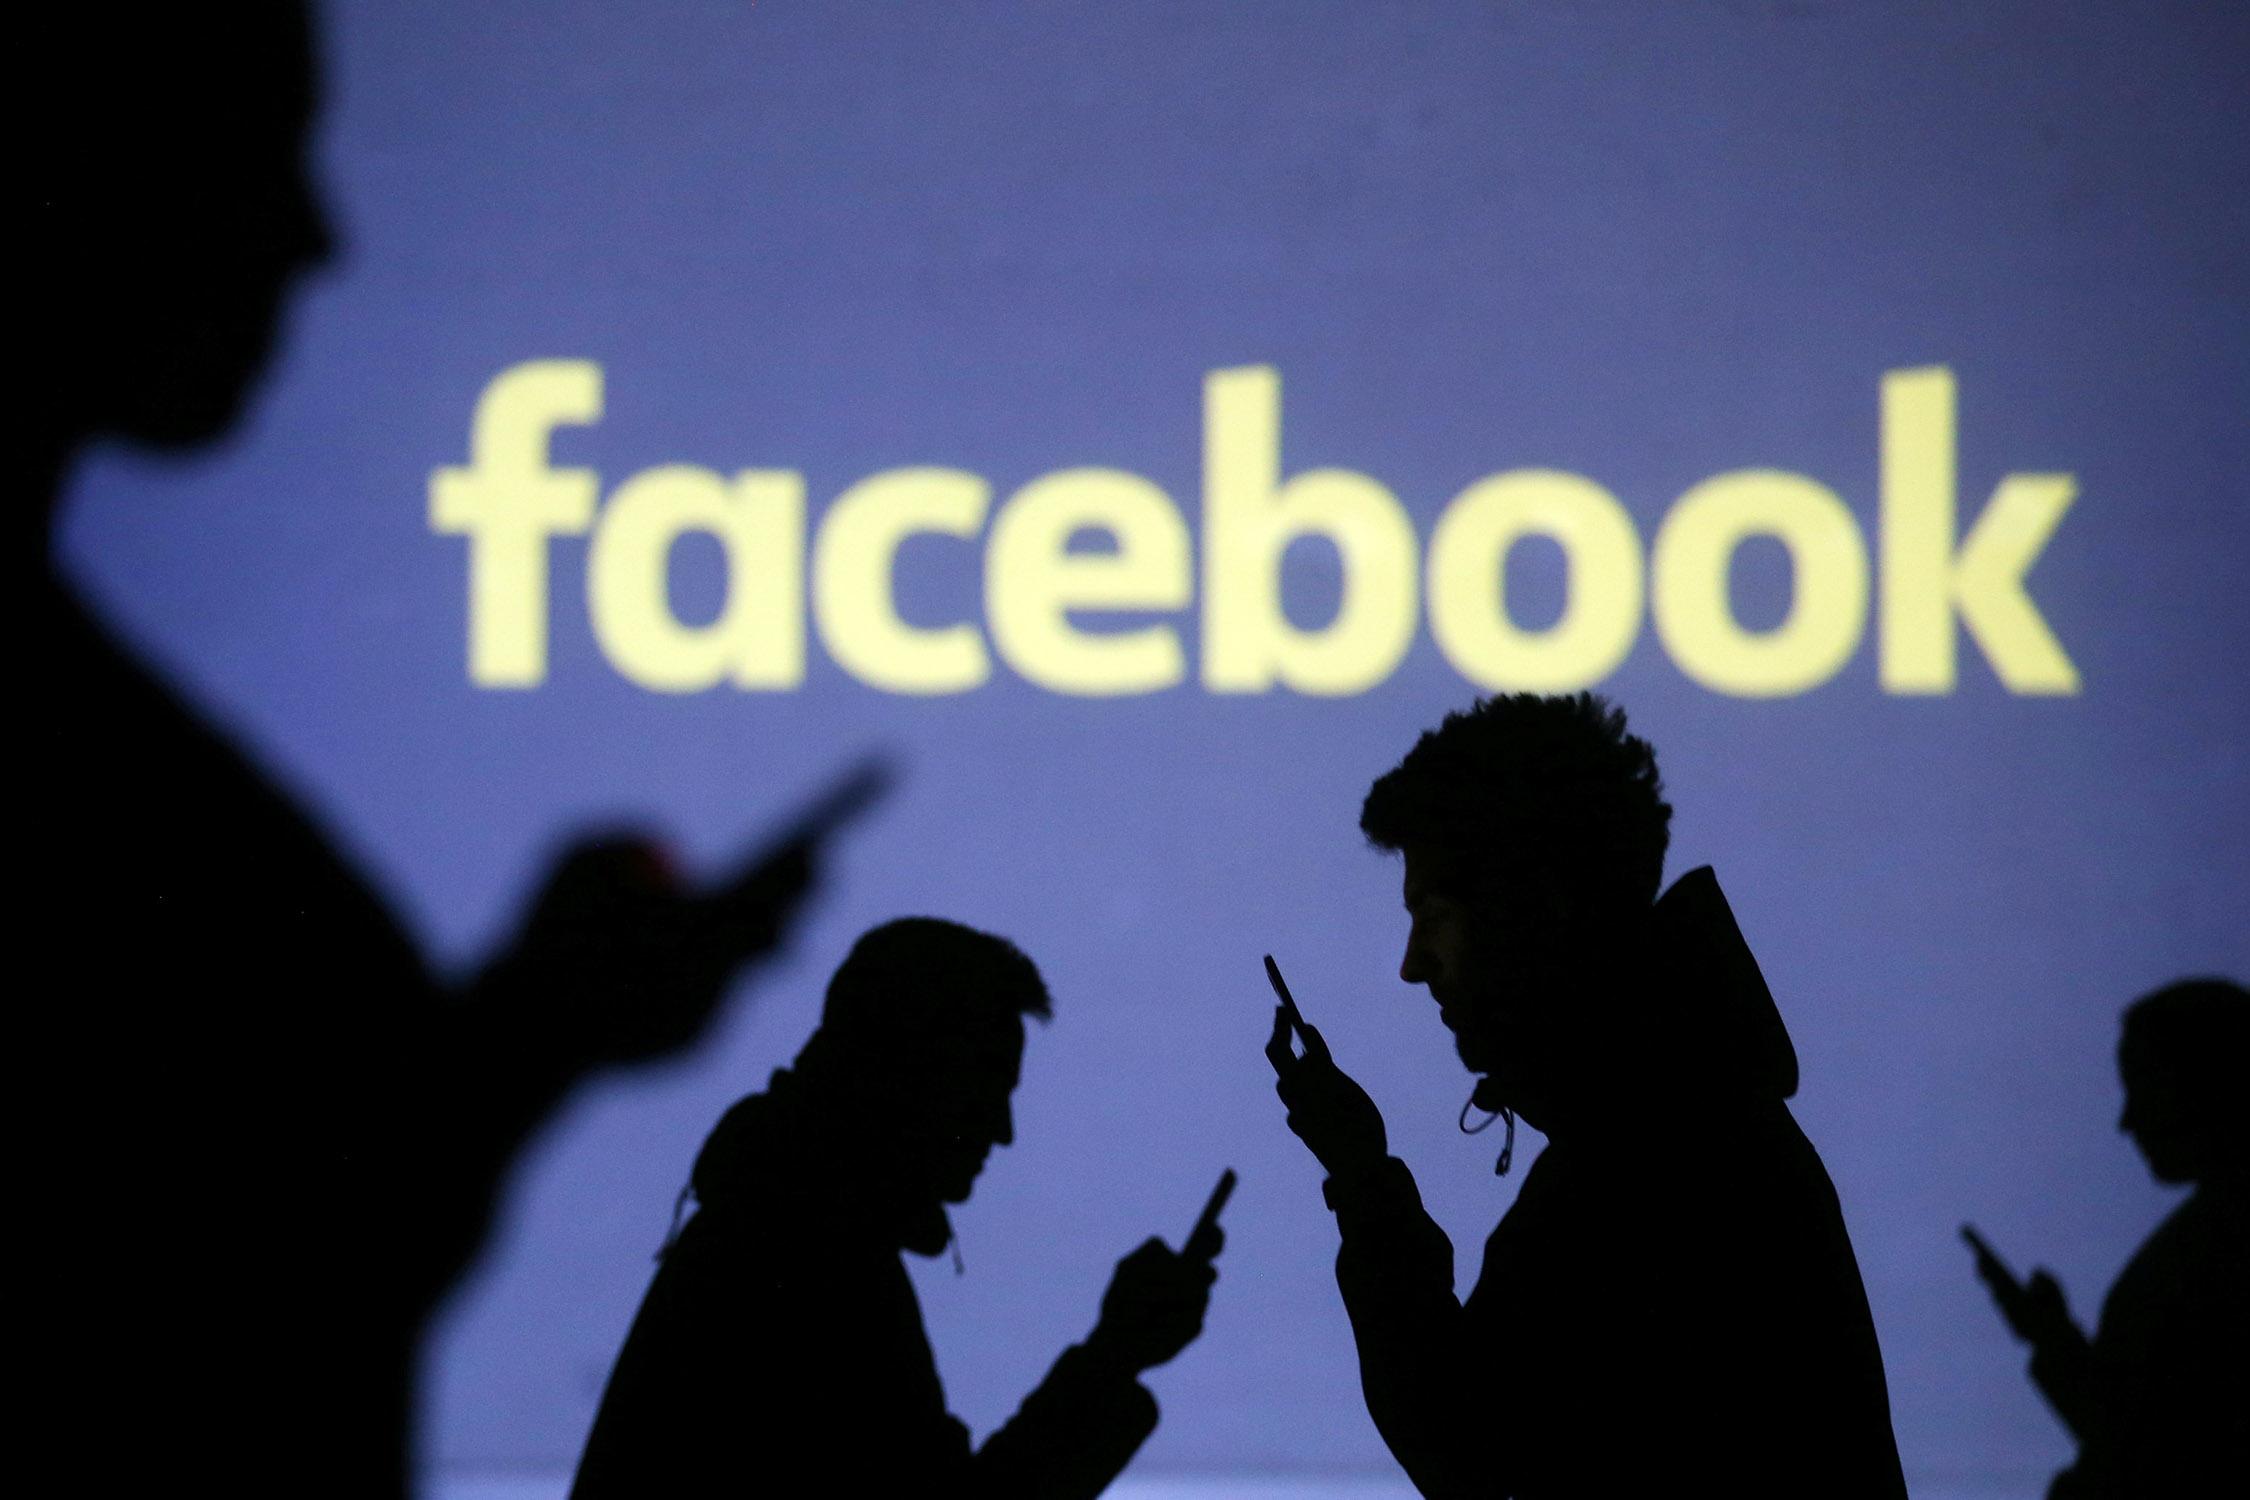 “Facebook, dobbiamo parlarne”: antisemitismo e antisionismo negli spazi pubblici